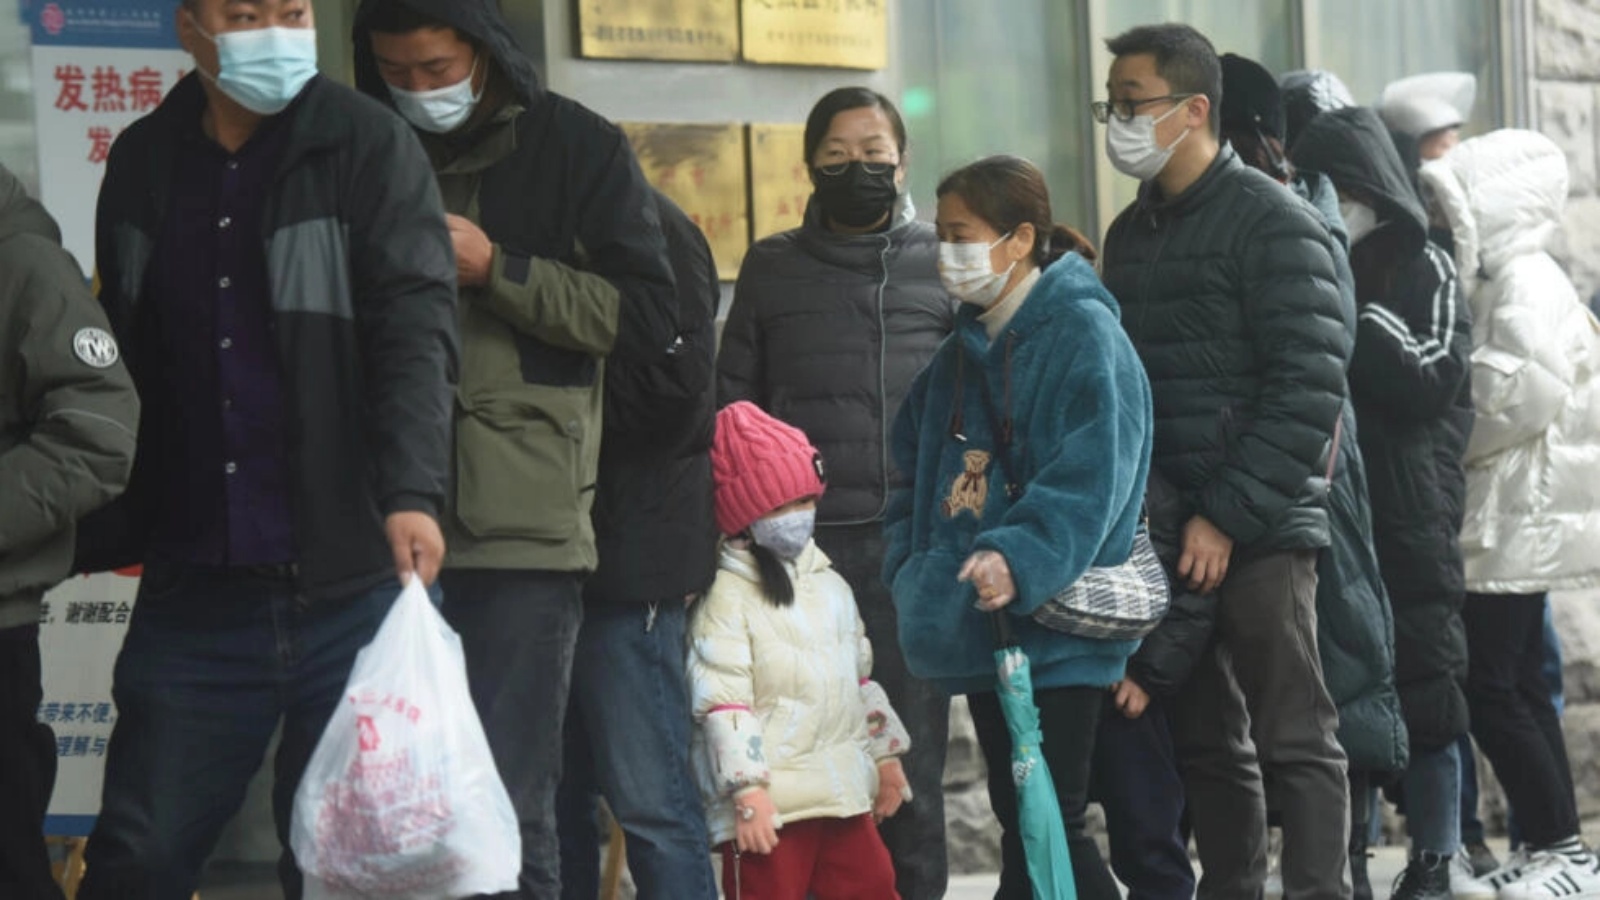 طابور انتظار لإجراء اختبار كوفيد-19 خارج مستشفى في هانغتشو في الصين في 16 ديسمبر 2022